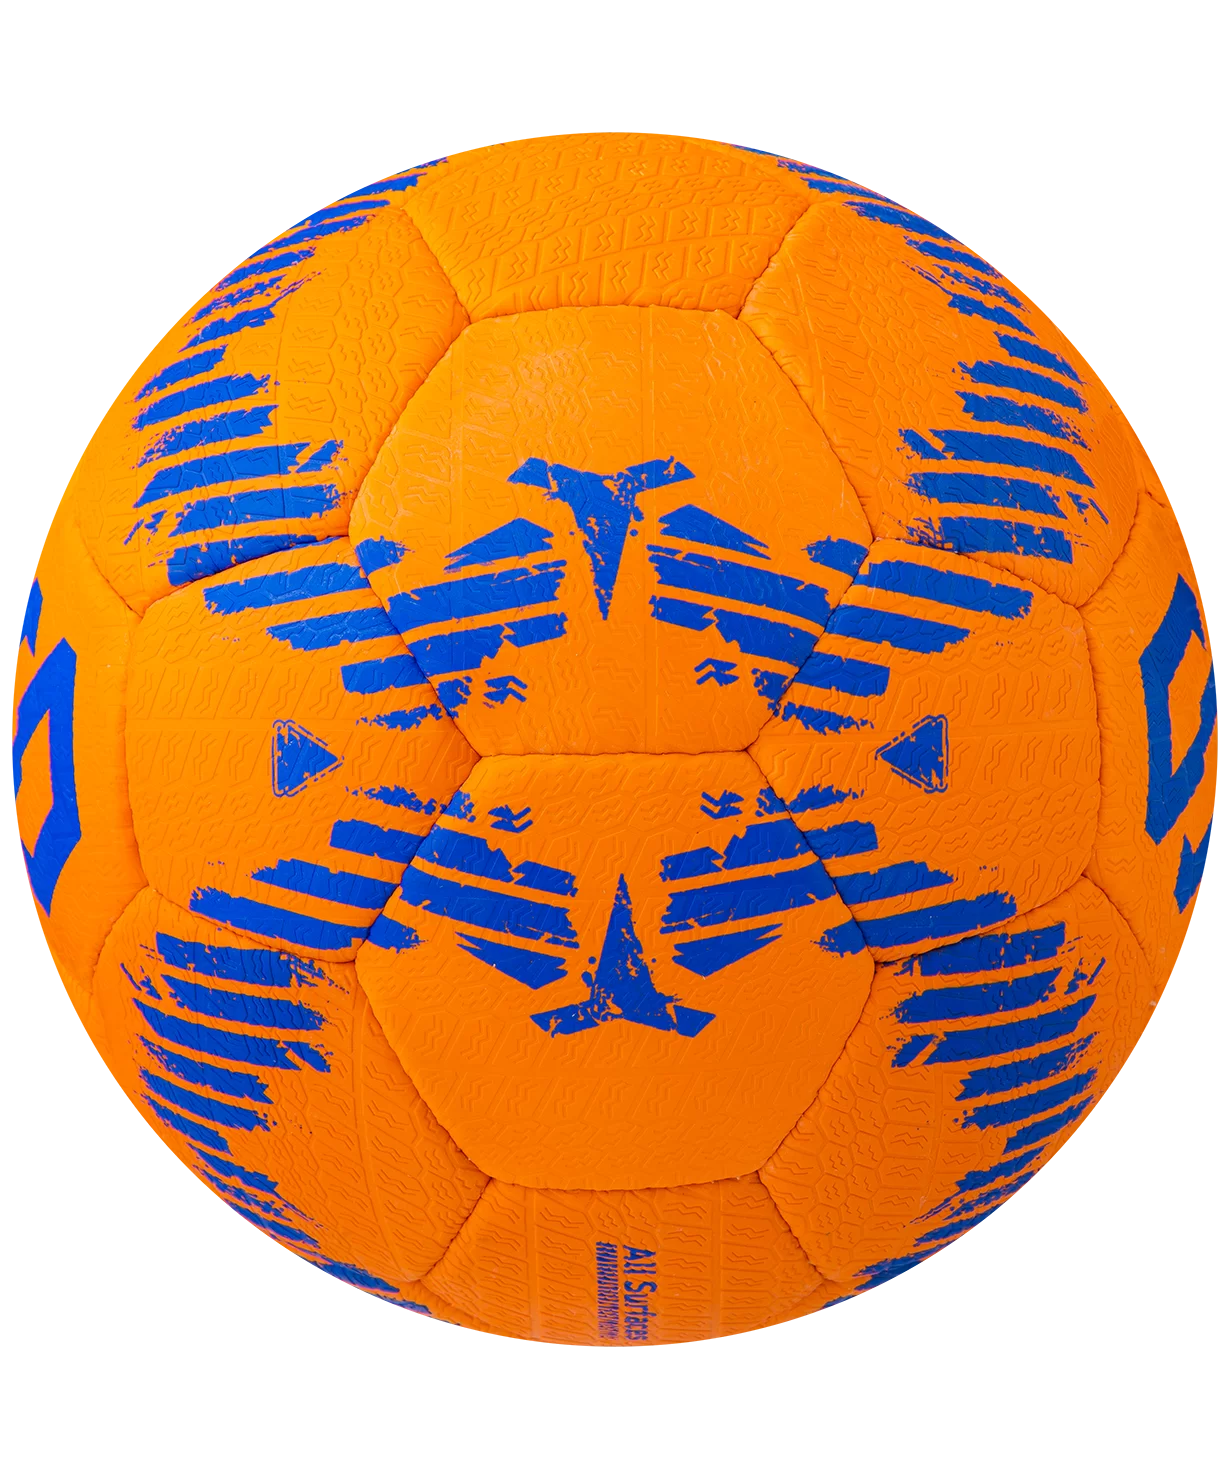 Фото Мяч футбольный Jögel JS-1110 Urban №5 оранжевый  14261 со склада магазина СпортСЕ